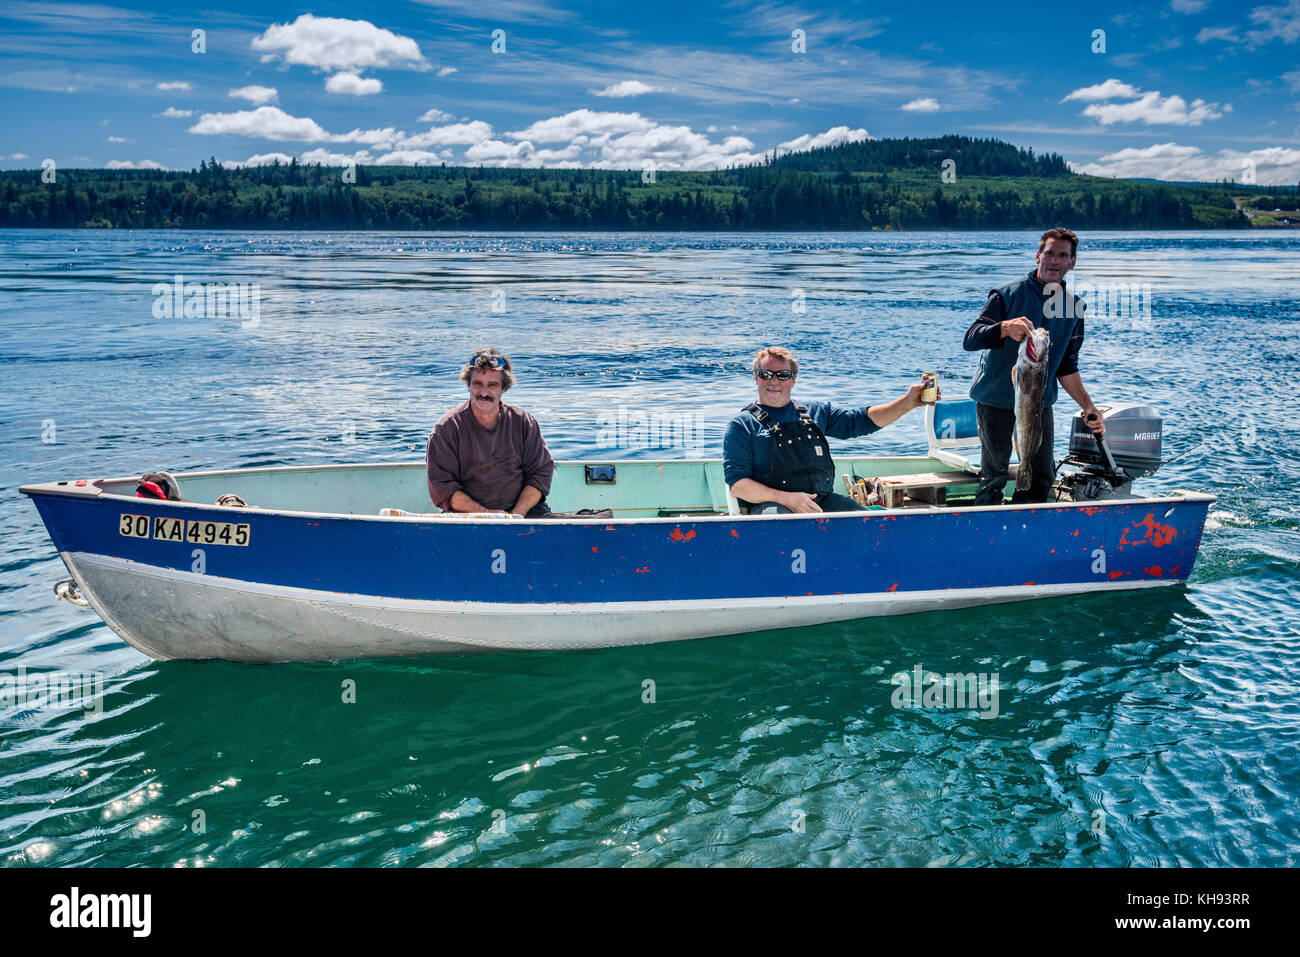 Tres hombres que muestran pescado que capturaron, salmón, en un pequeño barco, en el estrecho de Johnstone, en la isla de Vancouver, Columbia Británica, Canadá Foto de stock